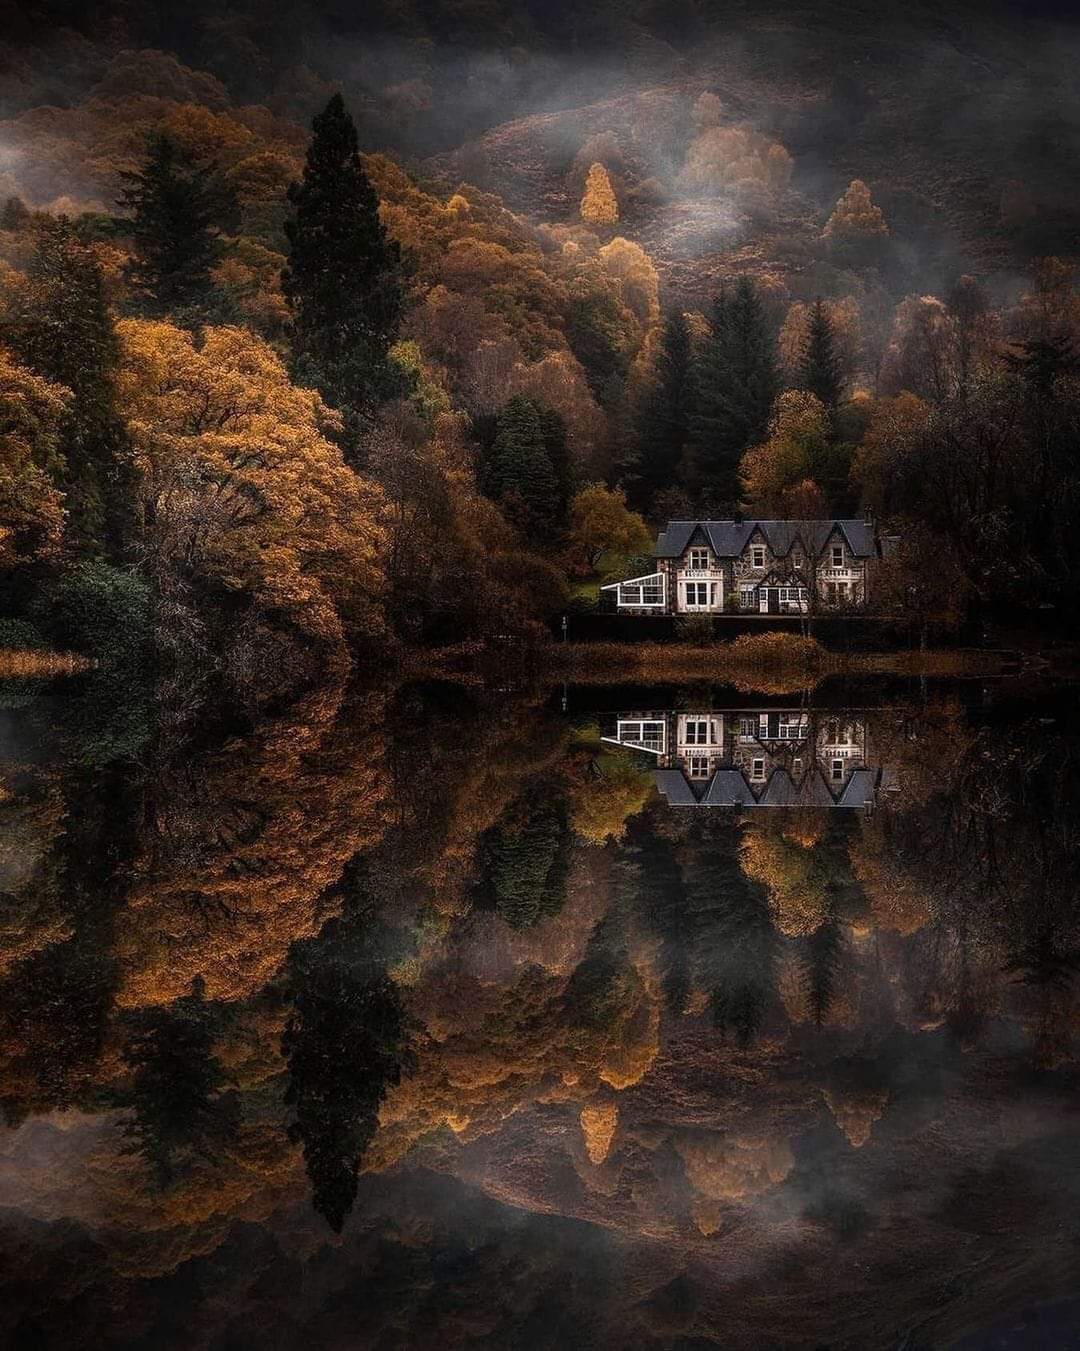 Loch Ard, Scotland